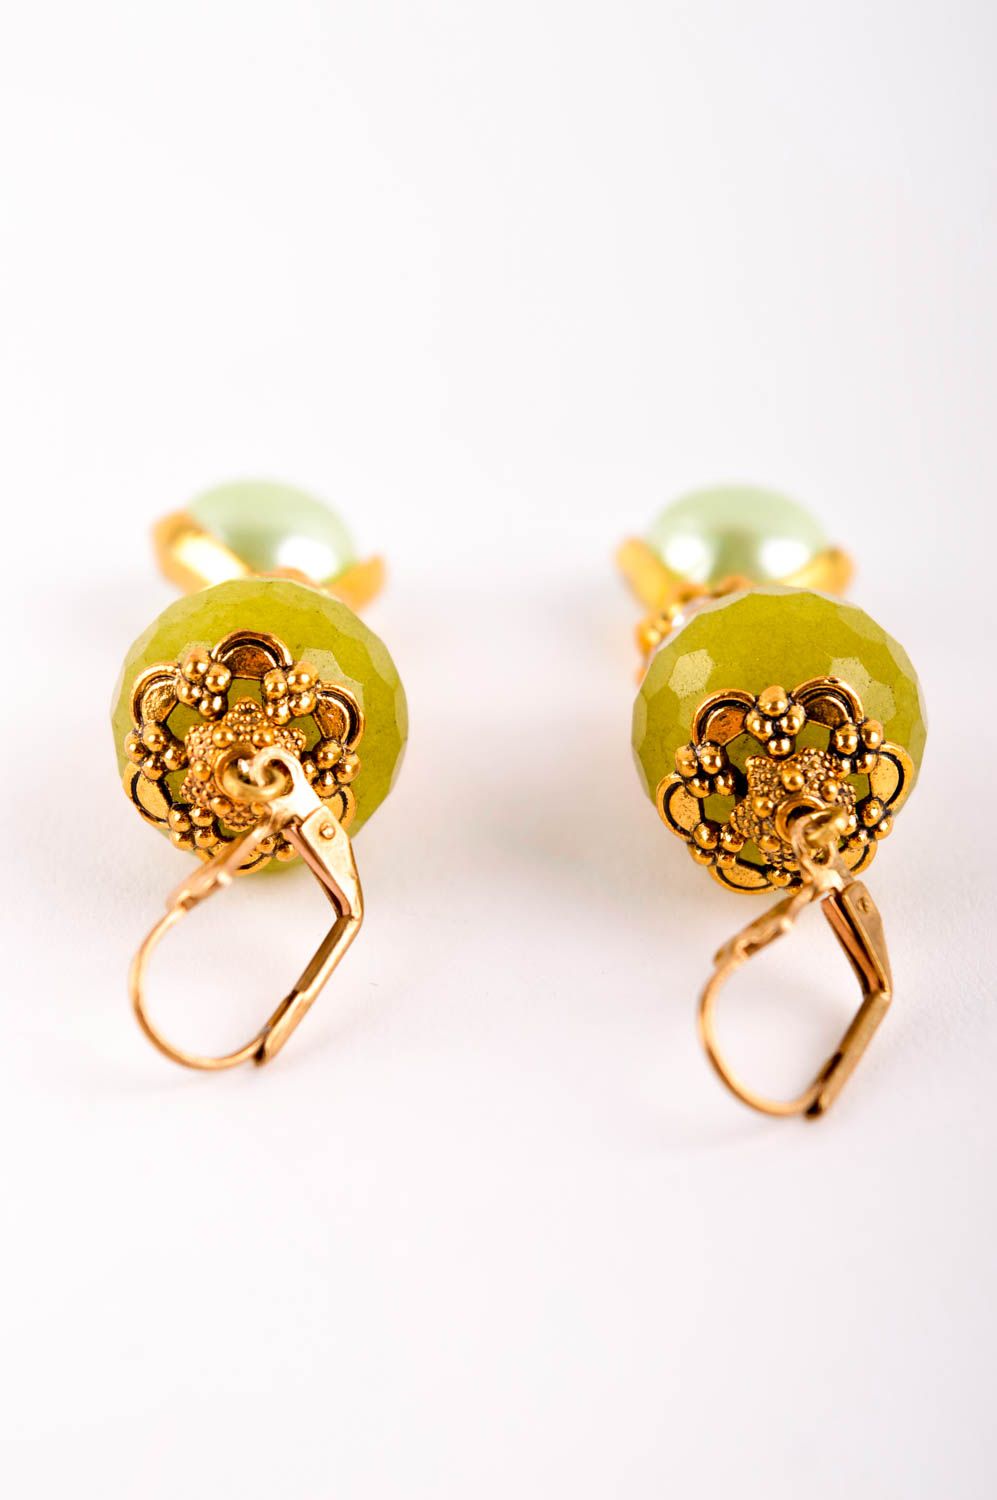 Handmade earrings designer earrings with charms stone earrings for women photo 4